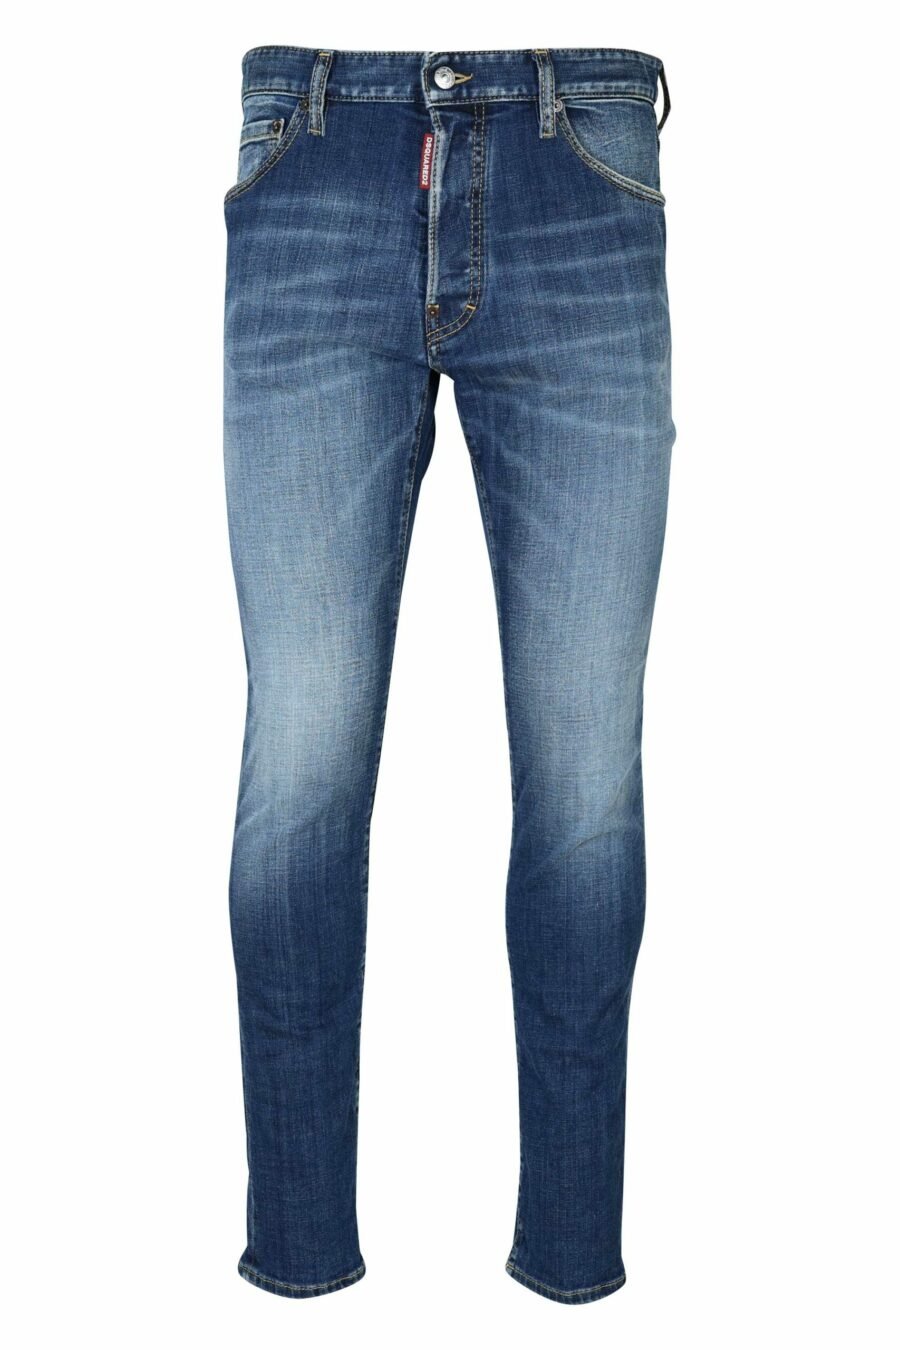 Blaue, halbdurchsichtige Denim-Hose "Cool Guy Jeans" - 8054148476557 skaliert